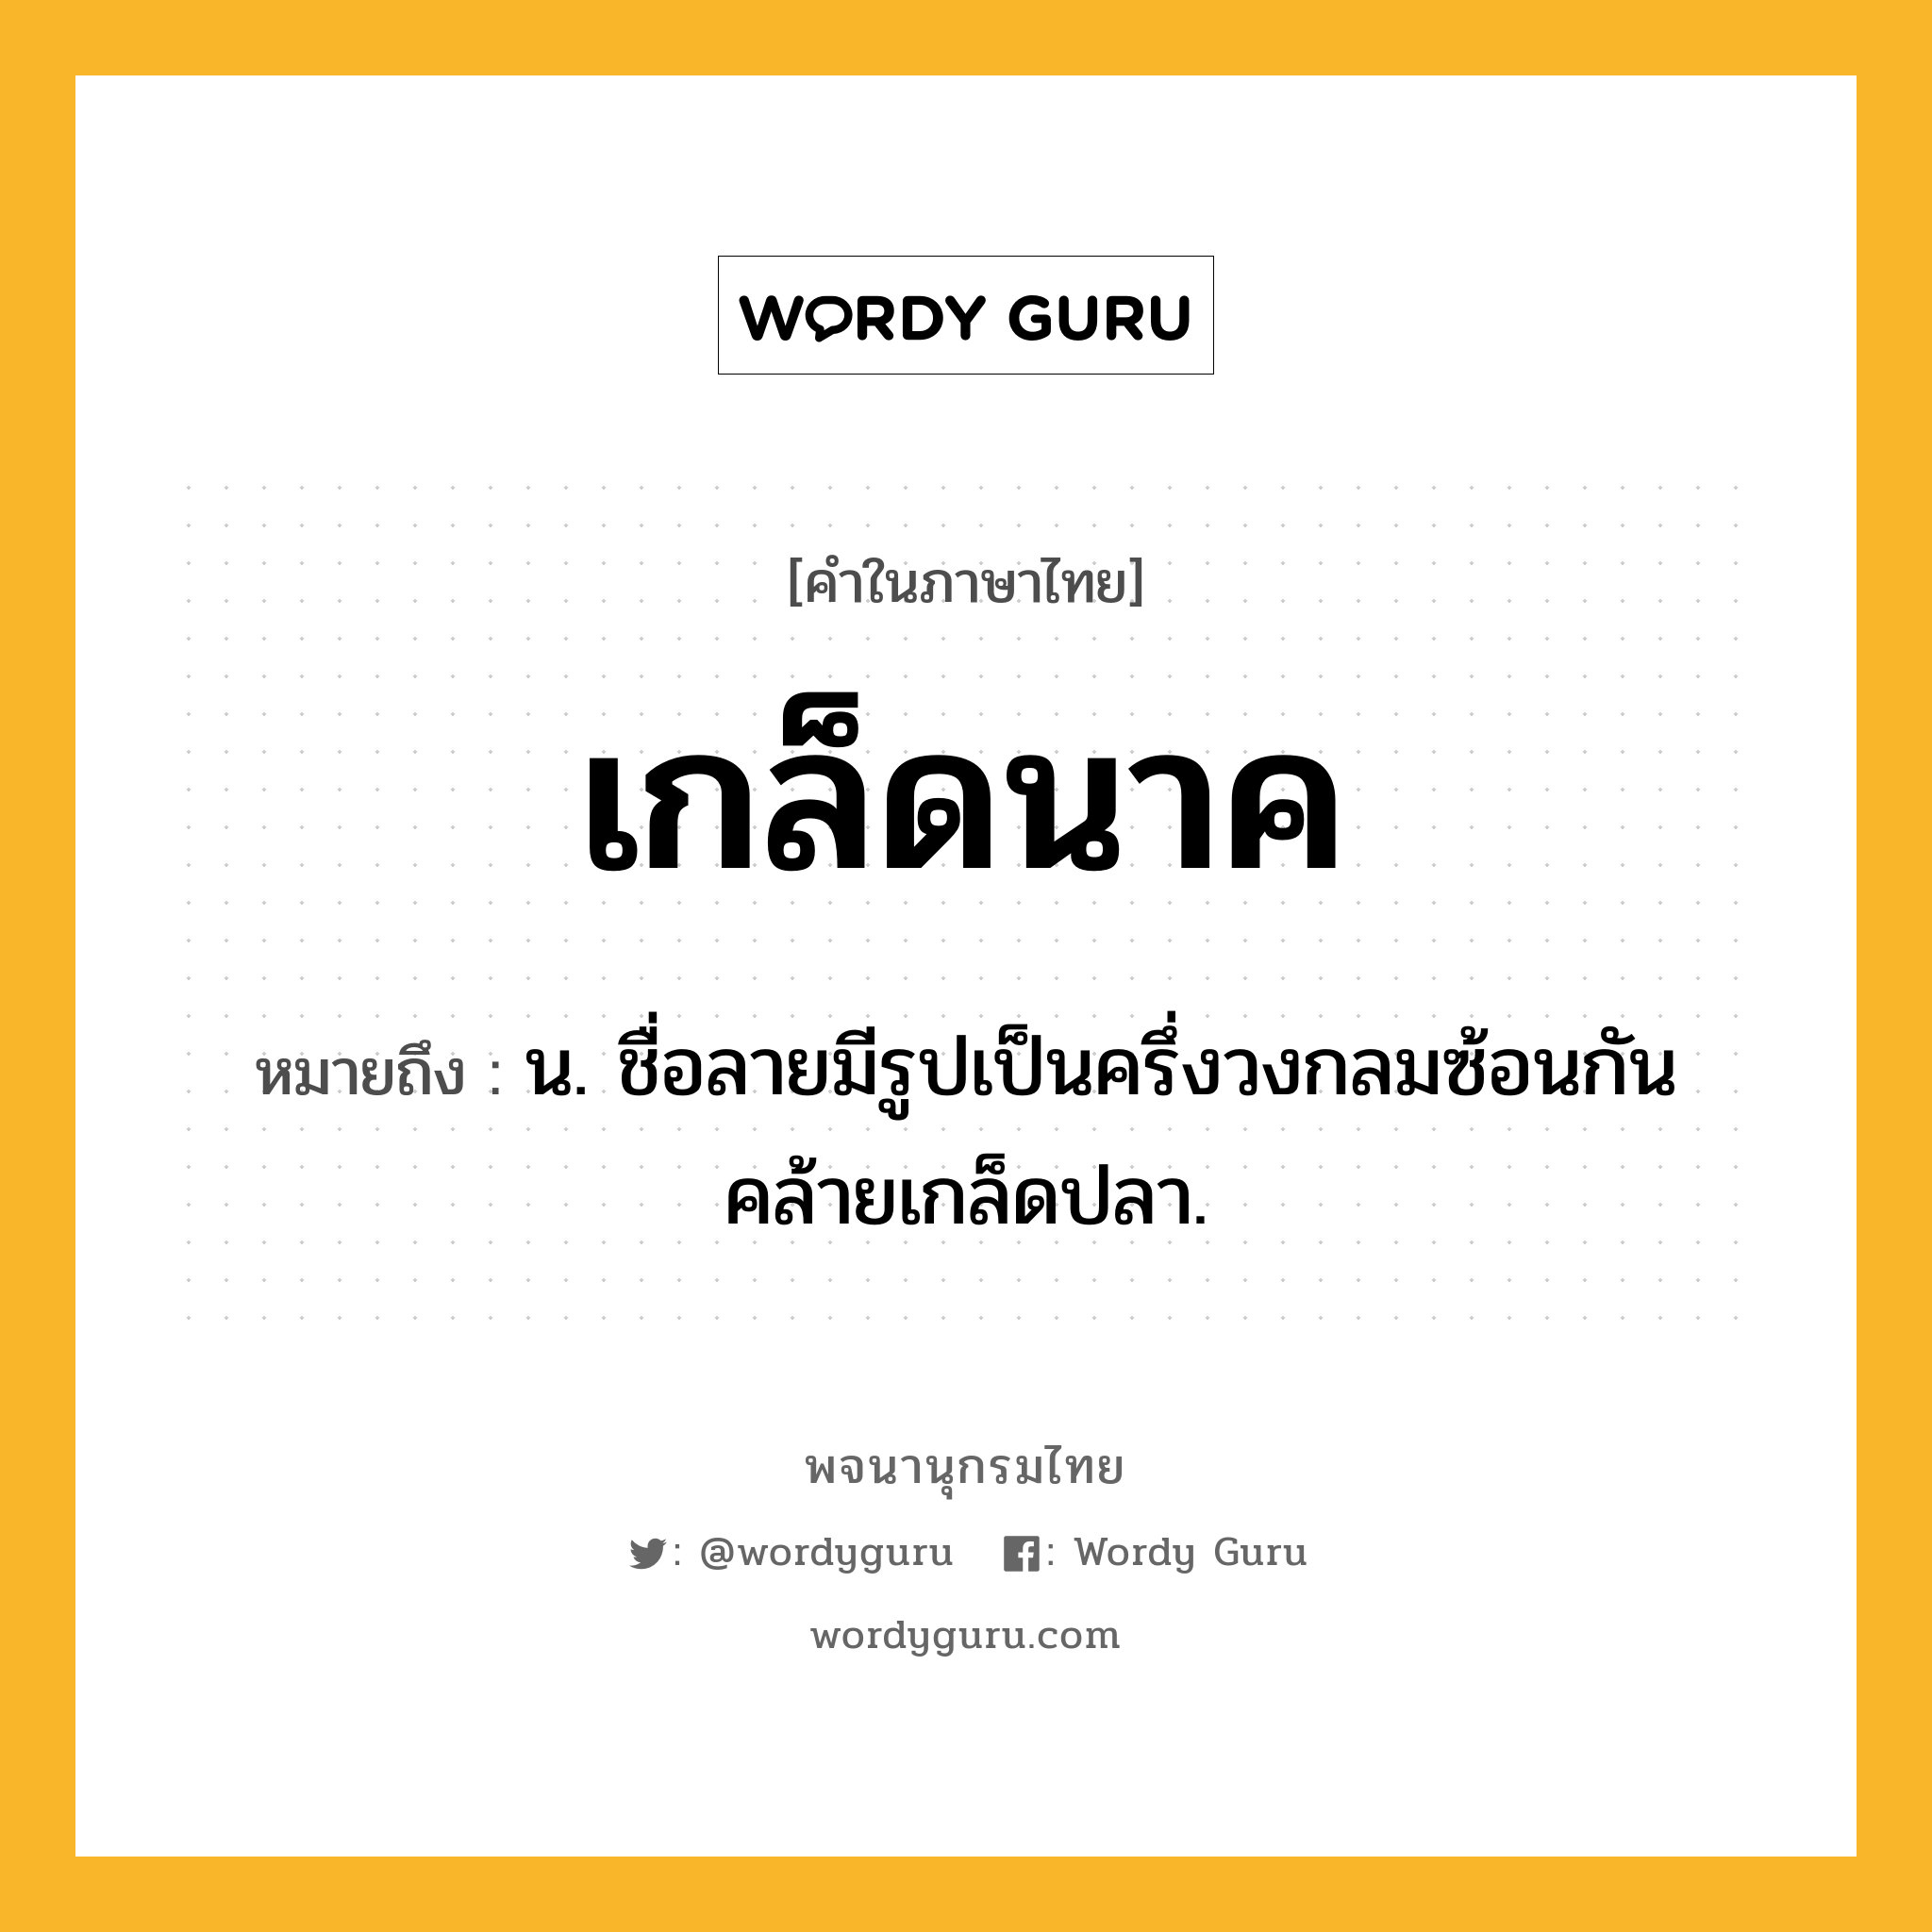 เกล็ดนาค หมายถึงอะไร?, คำในภาษาไทย เกล็ดนาค หมายถึง น. ชื่อลายมีรูปเป็นครึ่งวงกลมซ้อนกันคล้ายเกล็ดปลา.